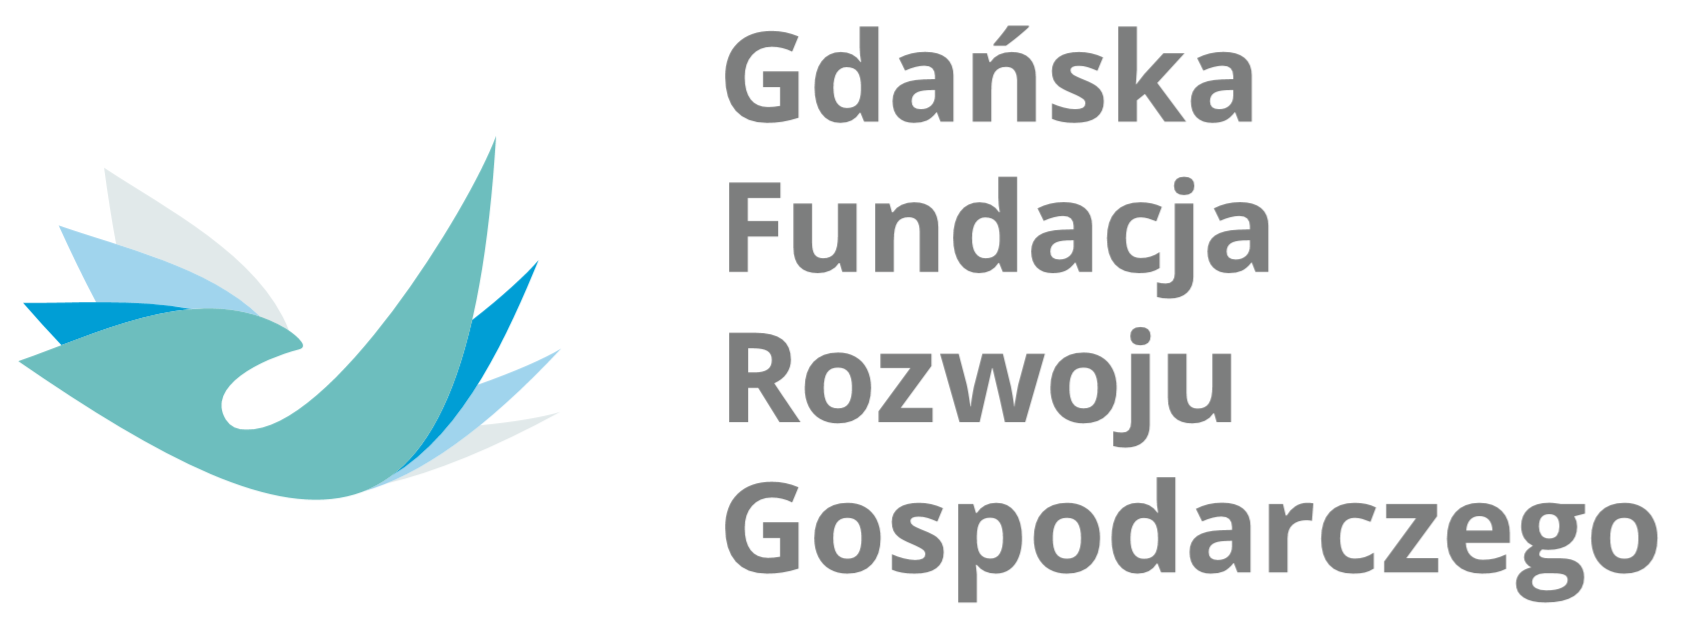 Dofinansowano ze środków Gdańskiej Fundacji Rozwoju Gospodarczego.